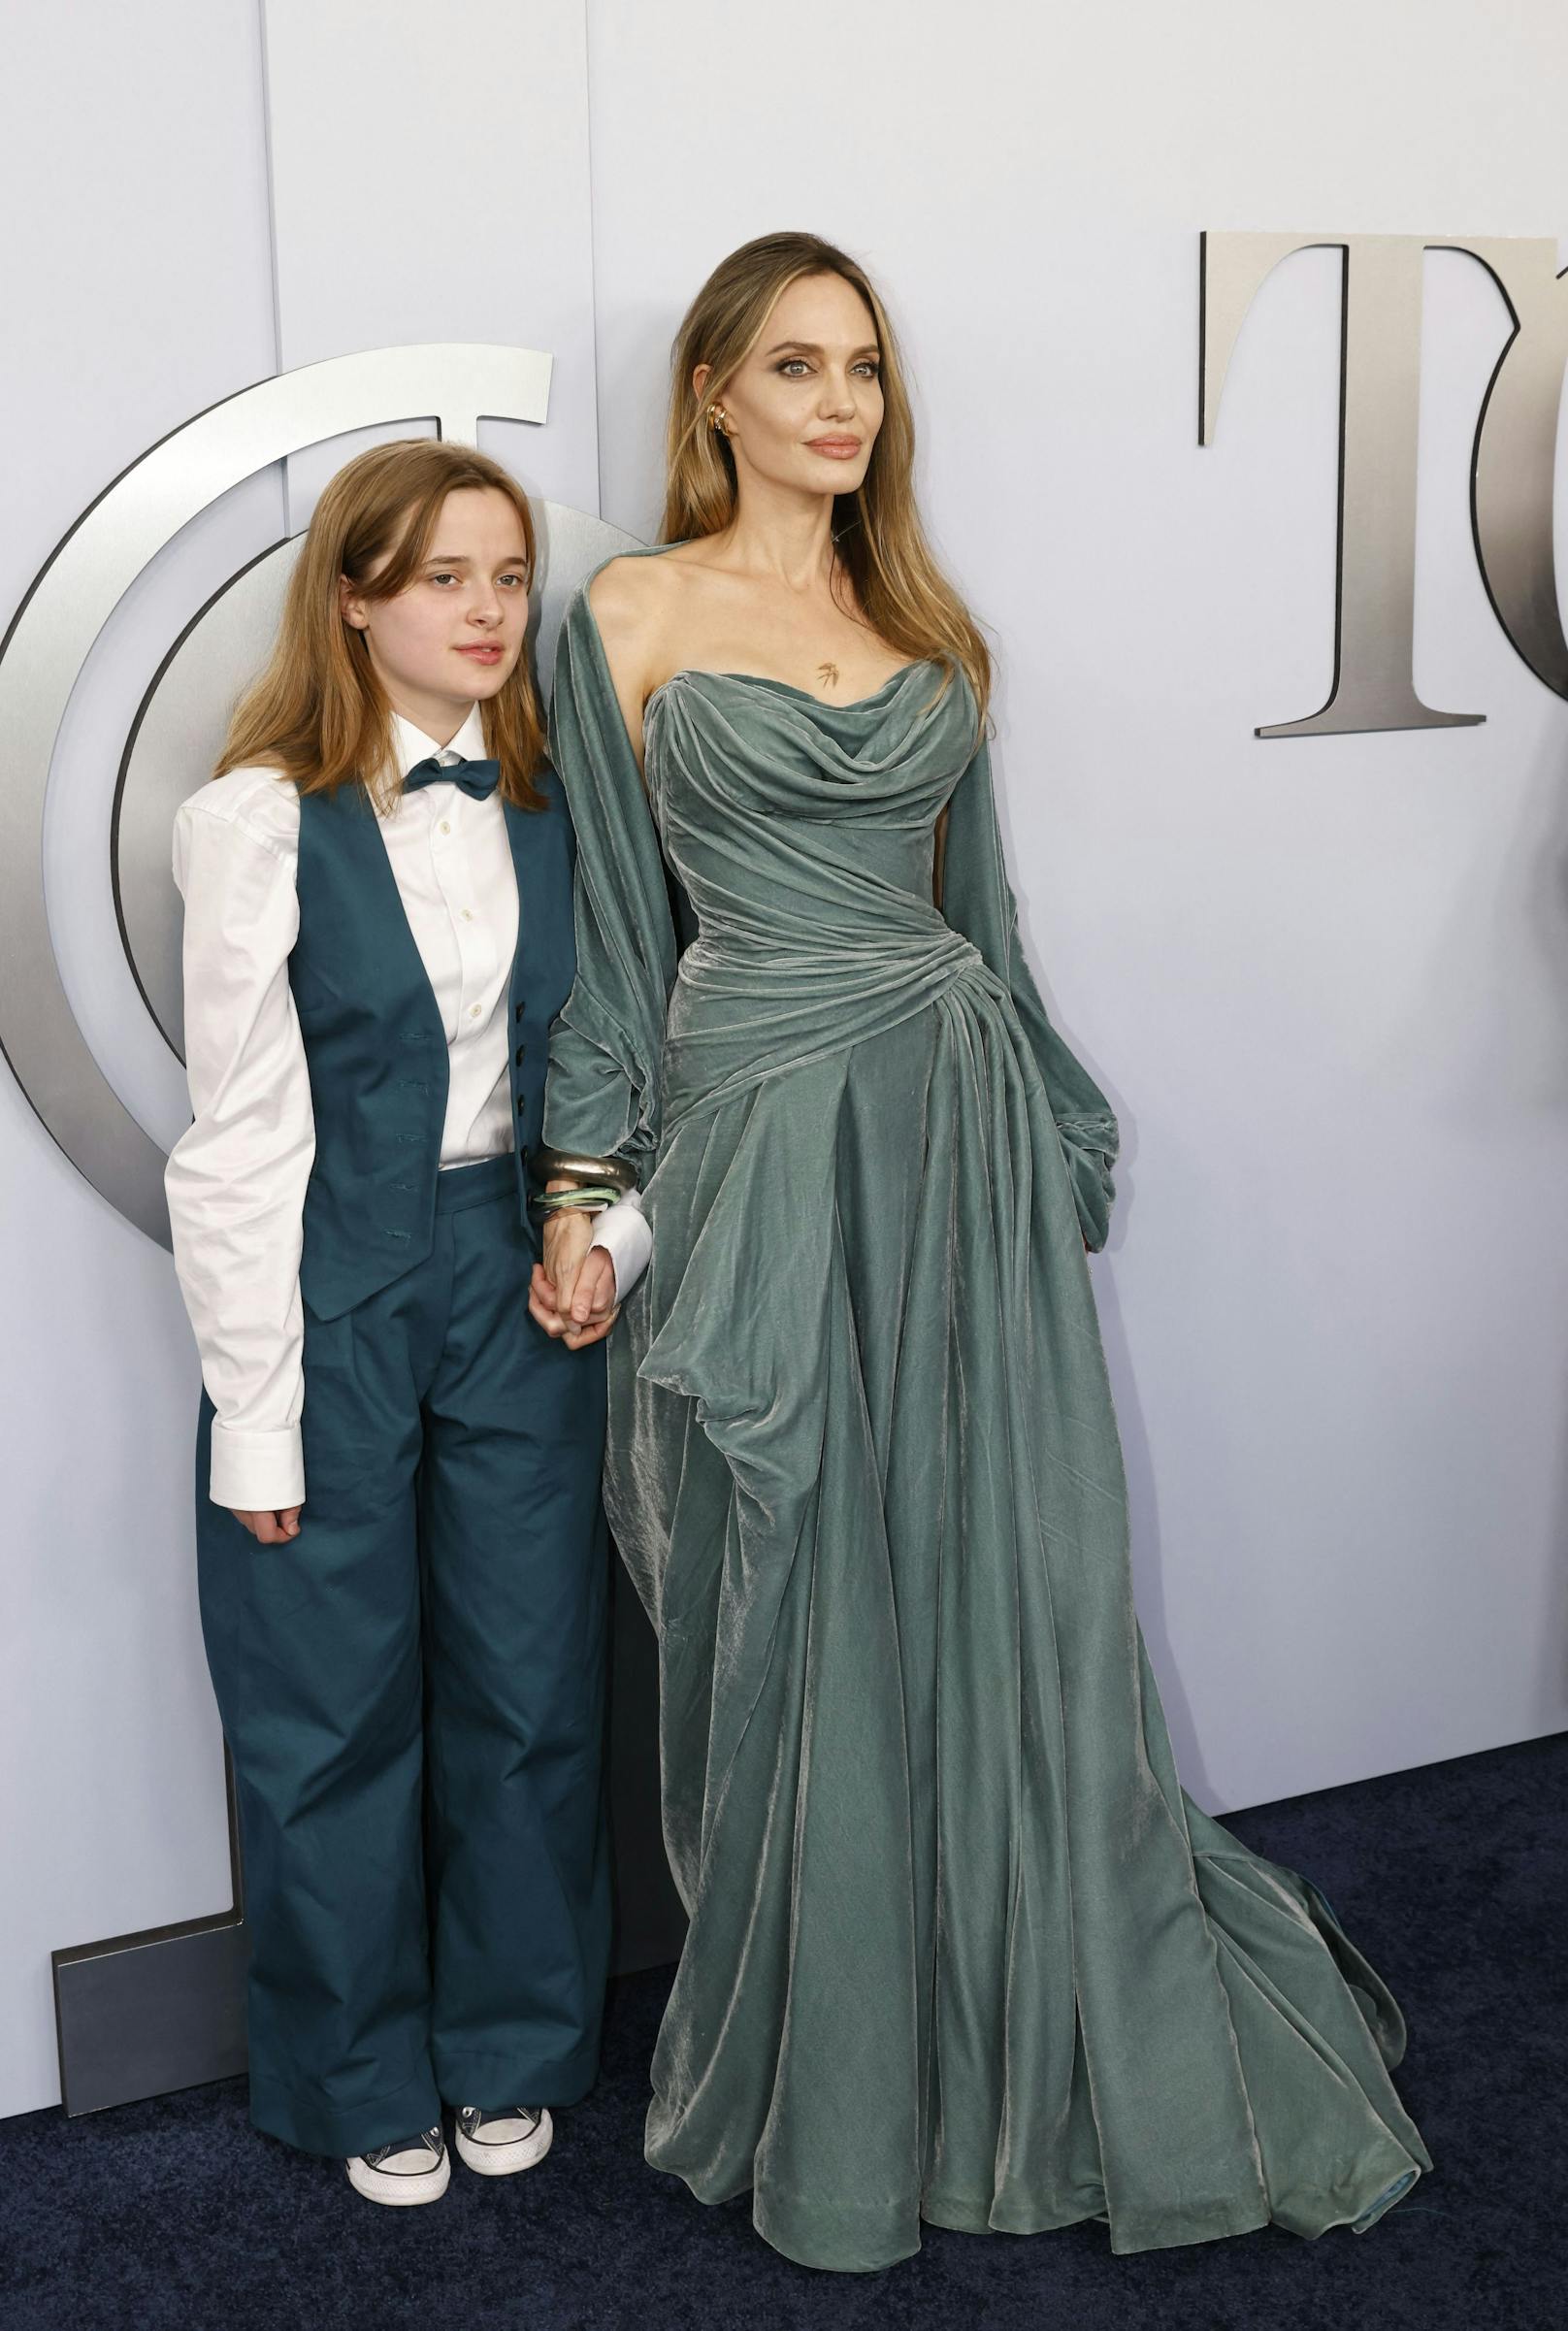 Im Blitzlicht-Gewitter hielt Tochter Vivienne ganz fest die Hand ihrer Mama Angelina Jolie.